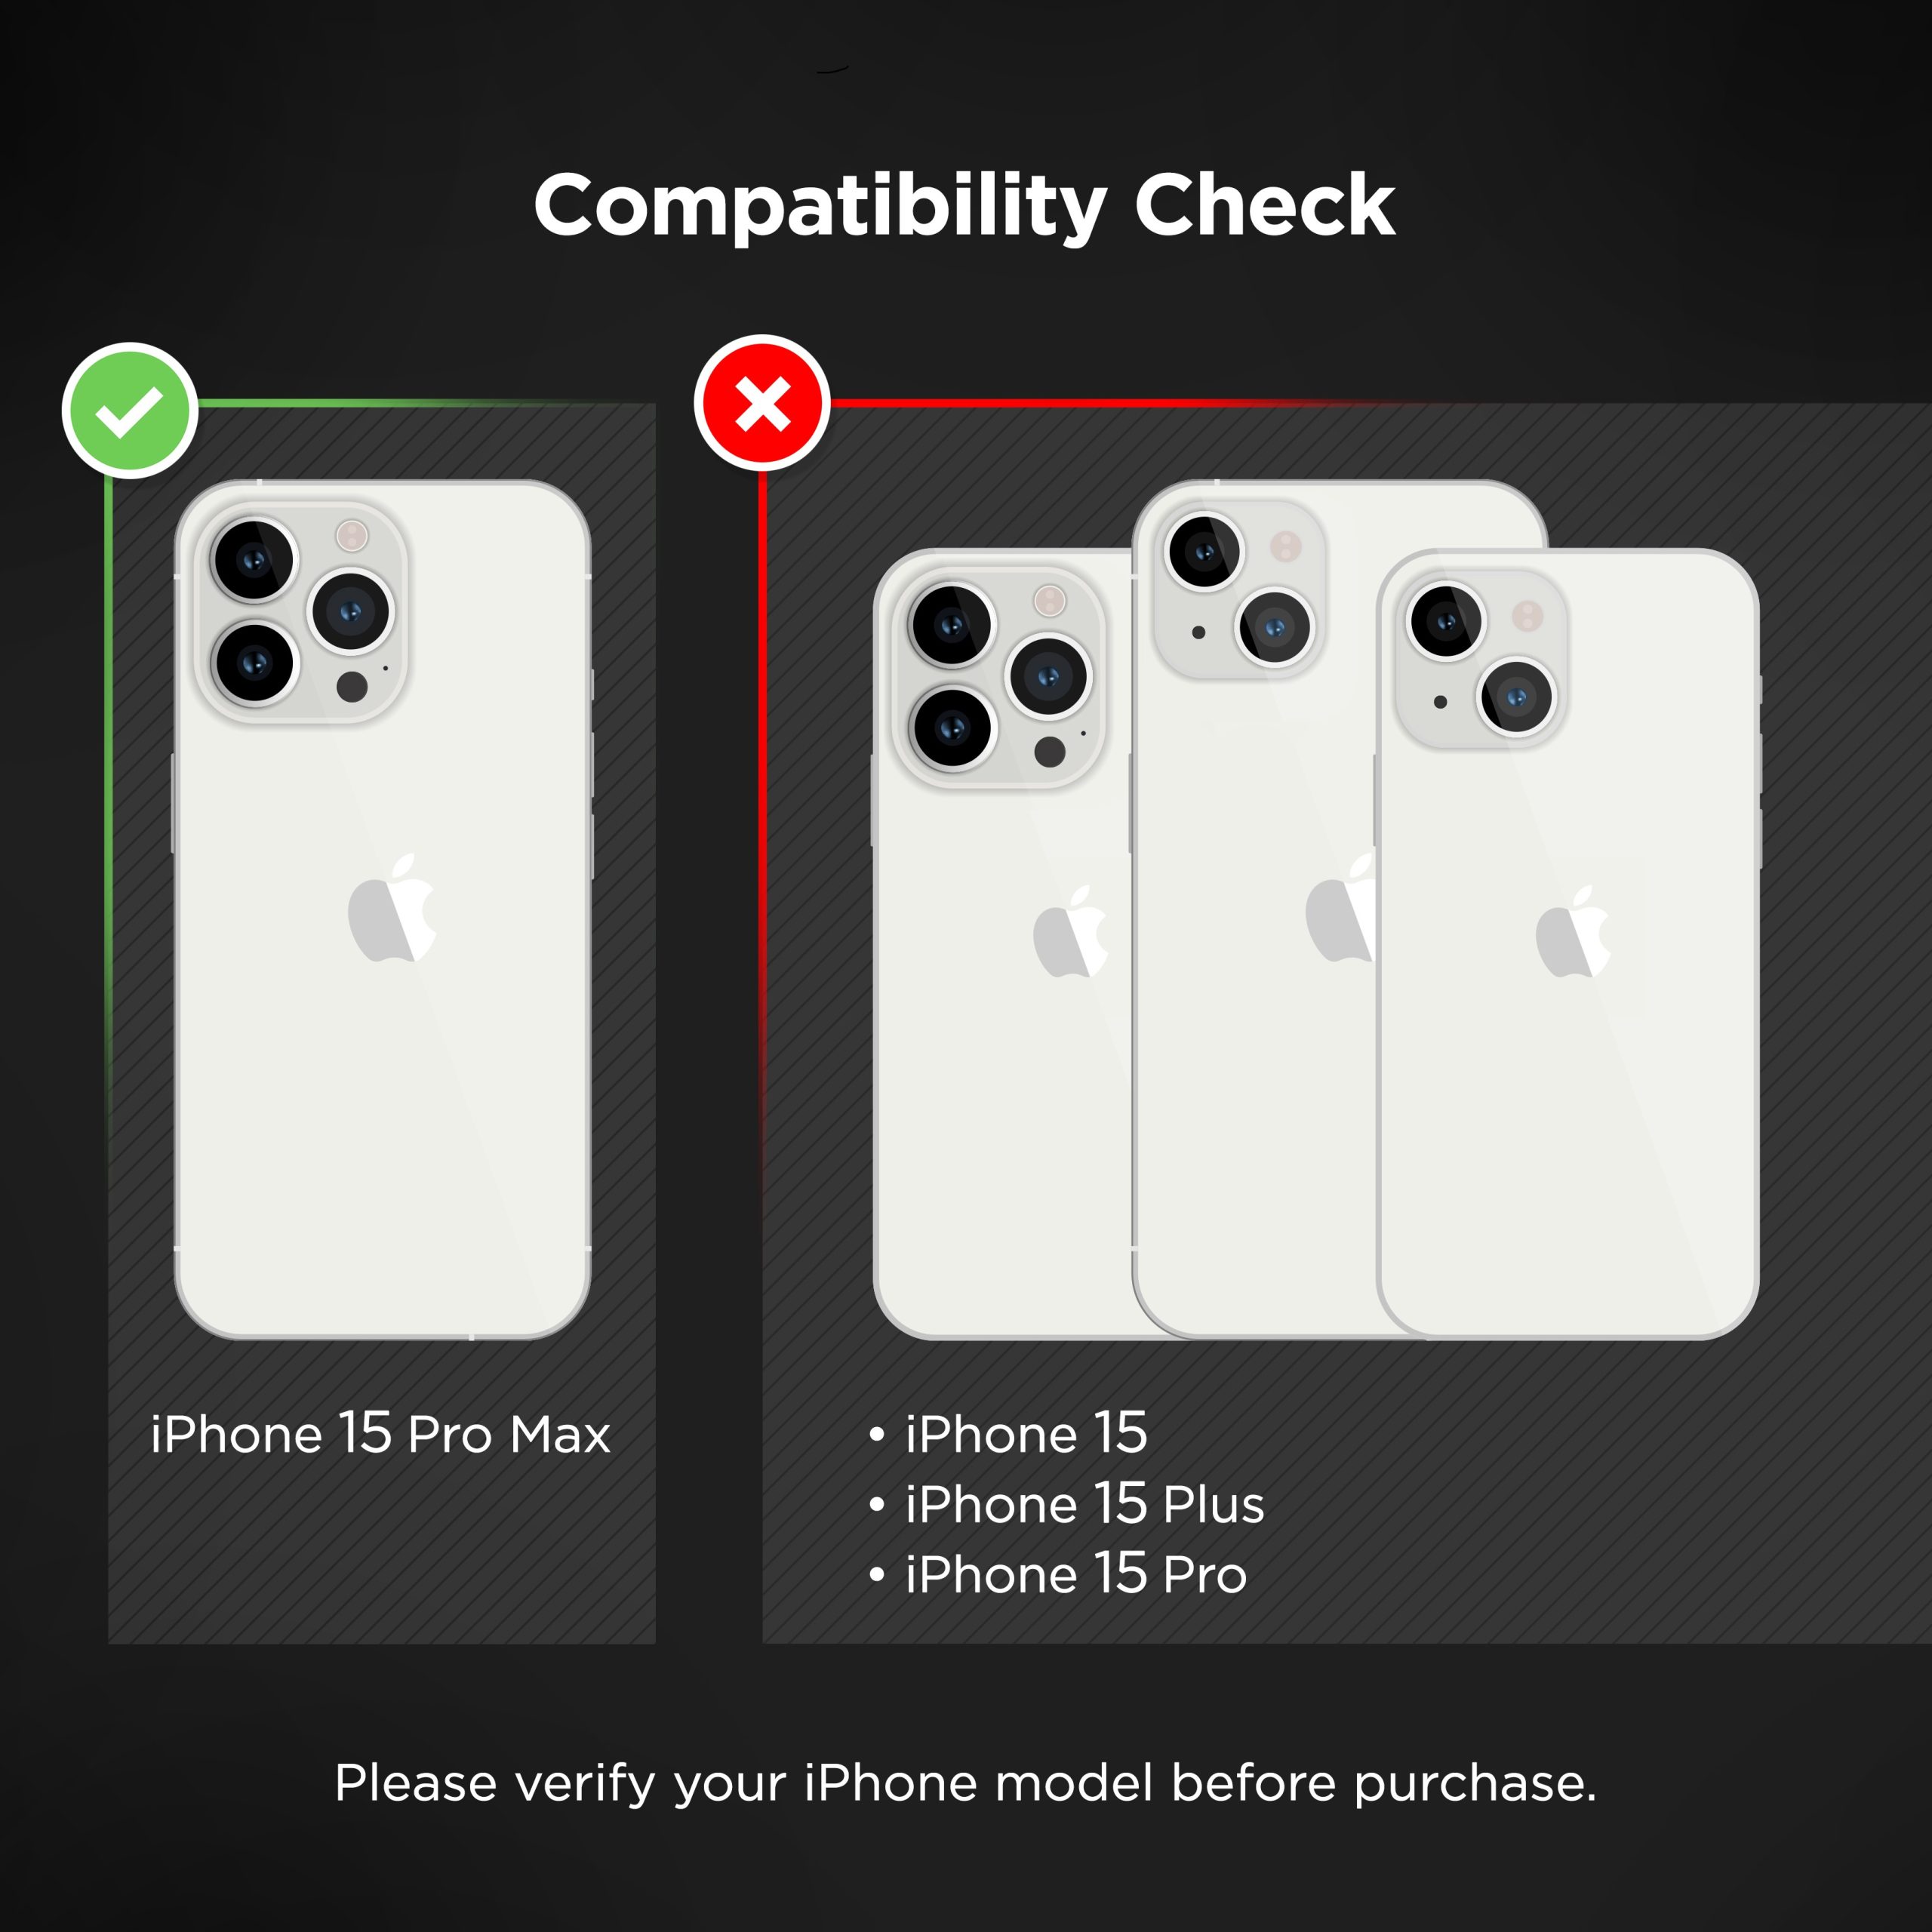 Consomac : Notre test des iPhone 15 et iPhone 15 Pro (Max)